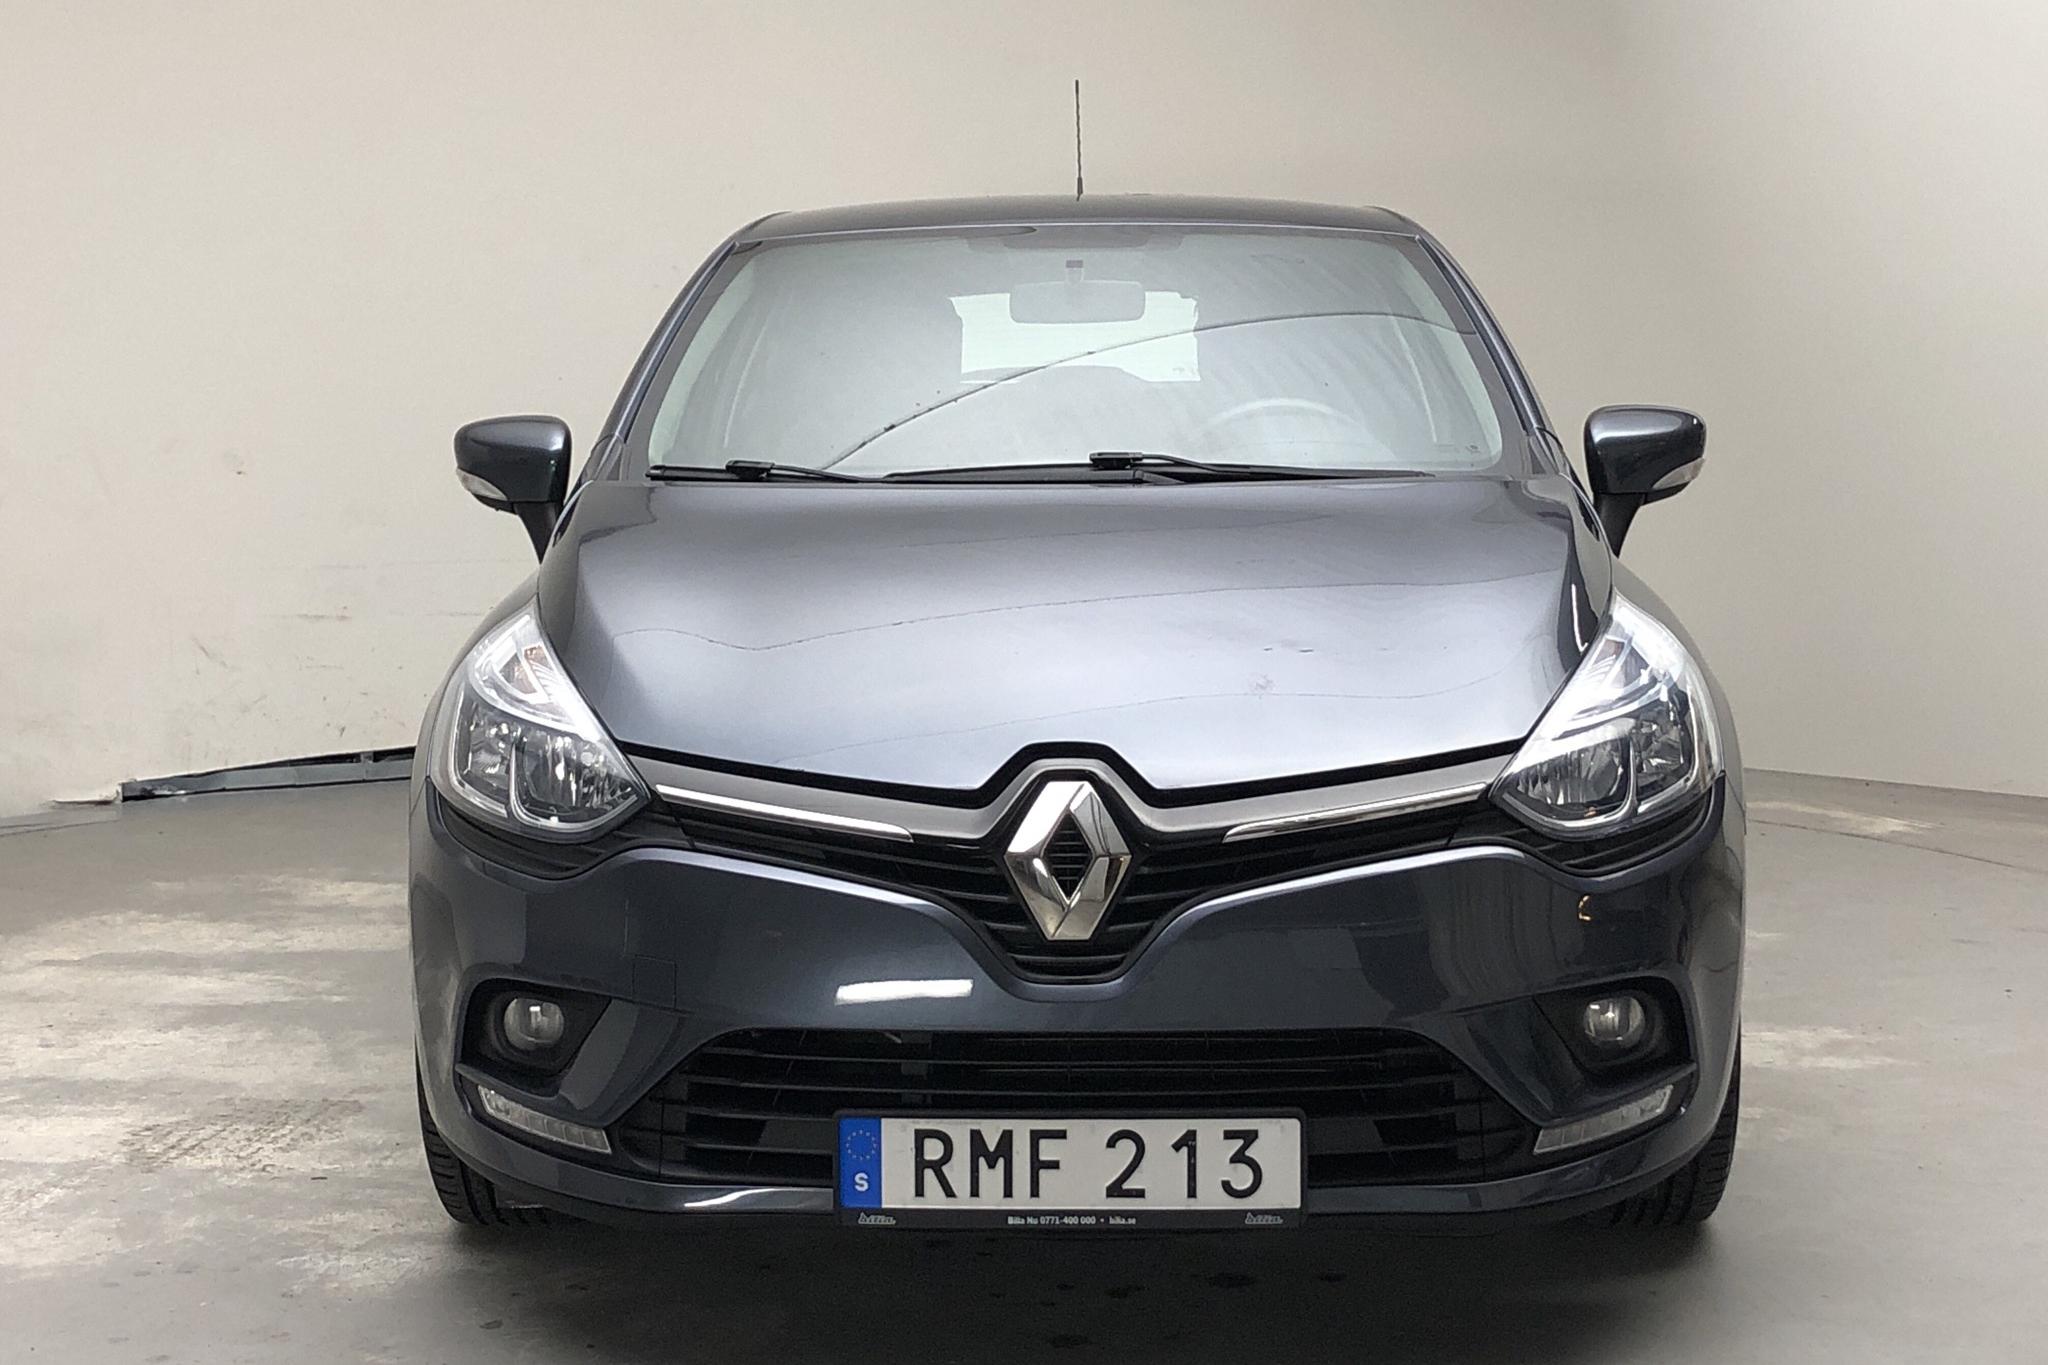 Renault Clio IV 1.2 16V 5dr (75hk) - 26 900 km - Manual - gray - 2017